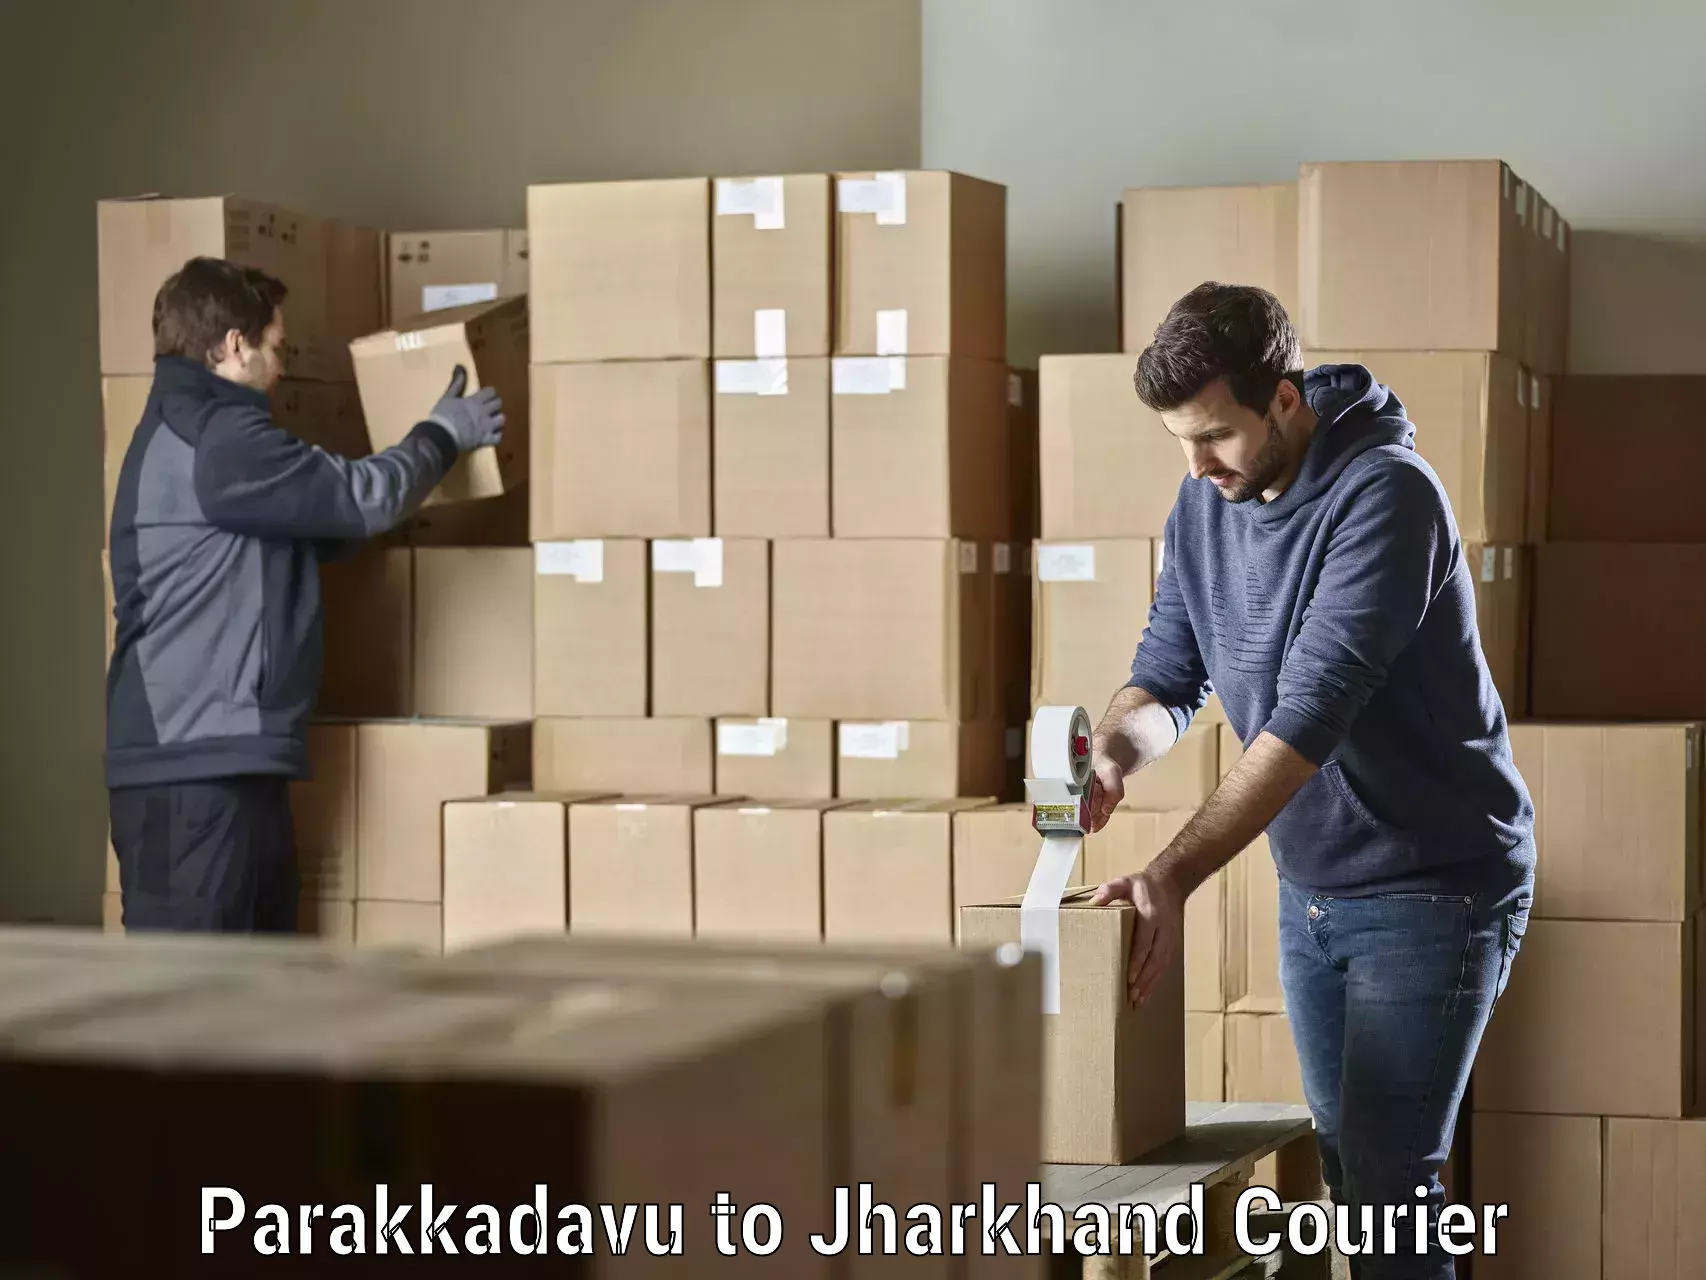 Business delivery service Parakkadavu to Ranchi